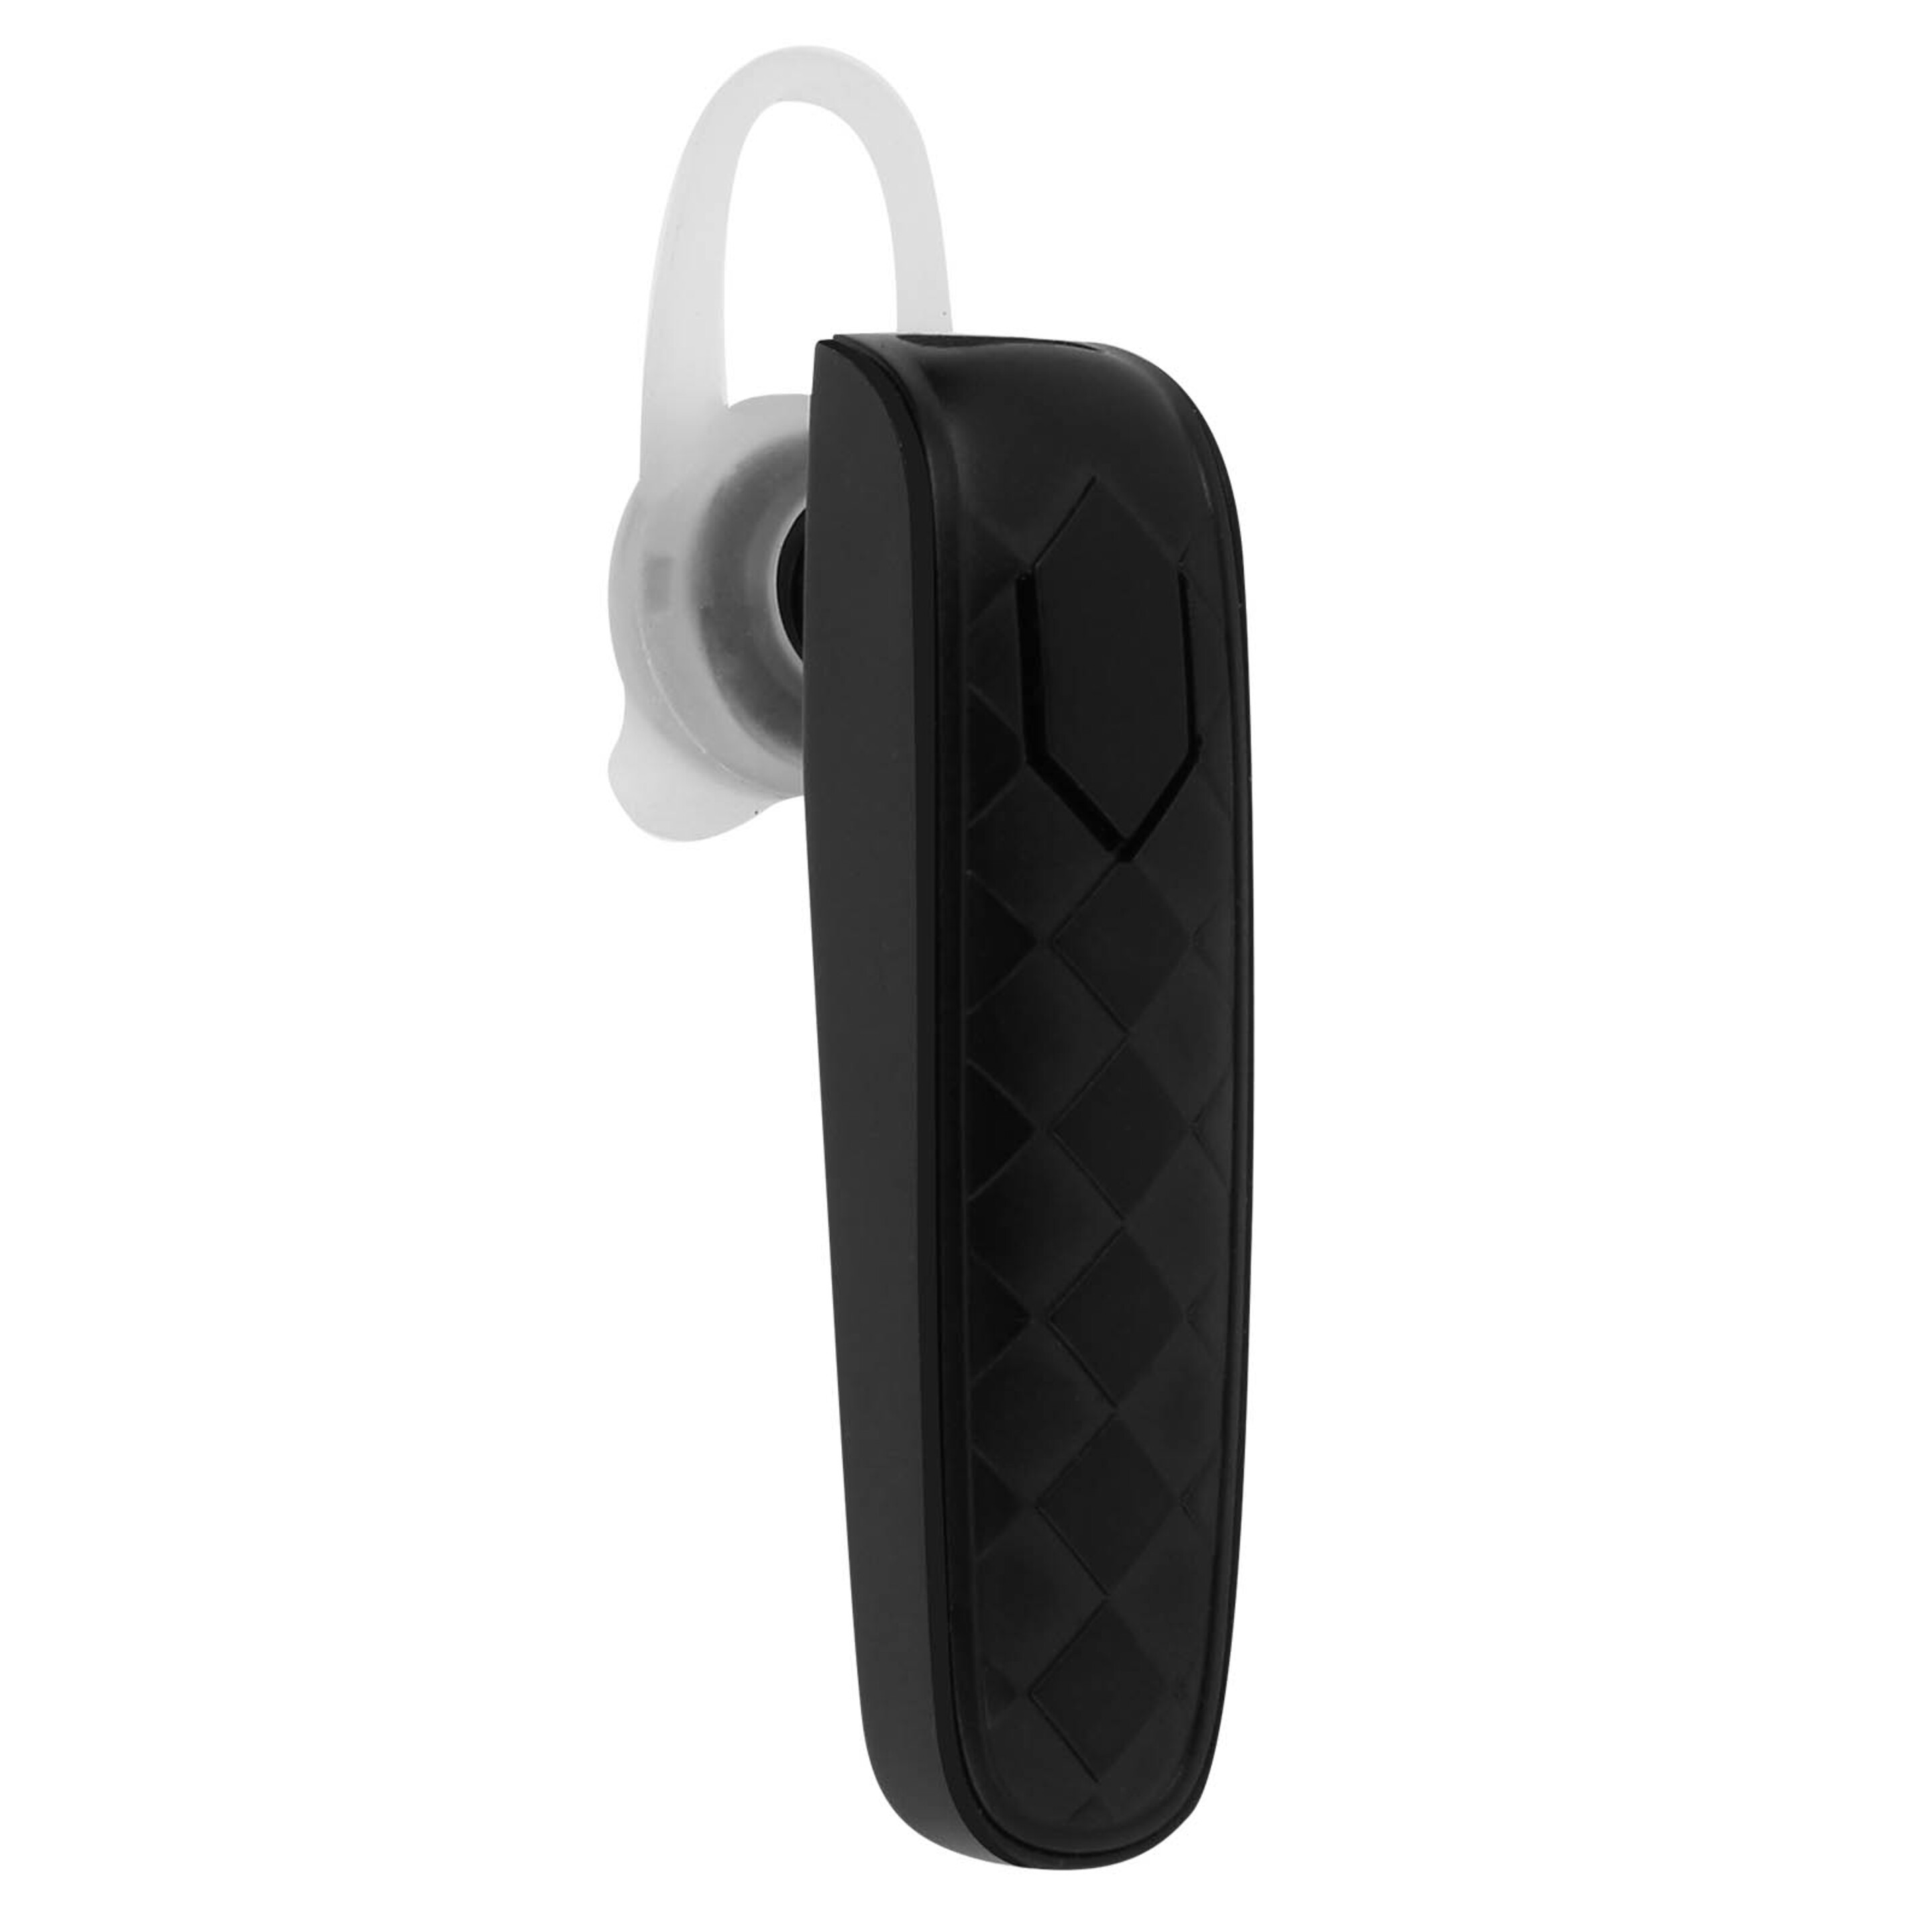 Auricular Manos Libres Bluetooth Splendore Bl-03 Inkax Reducción Ruido